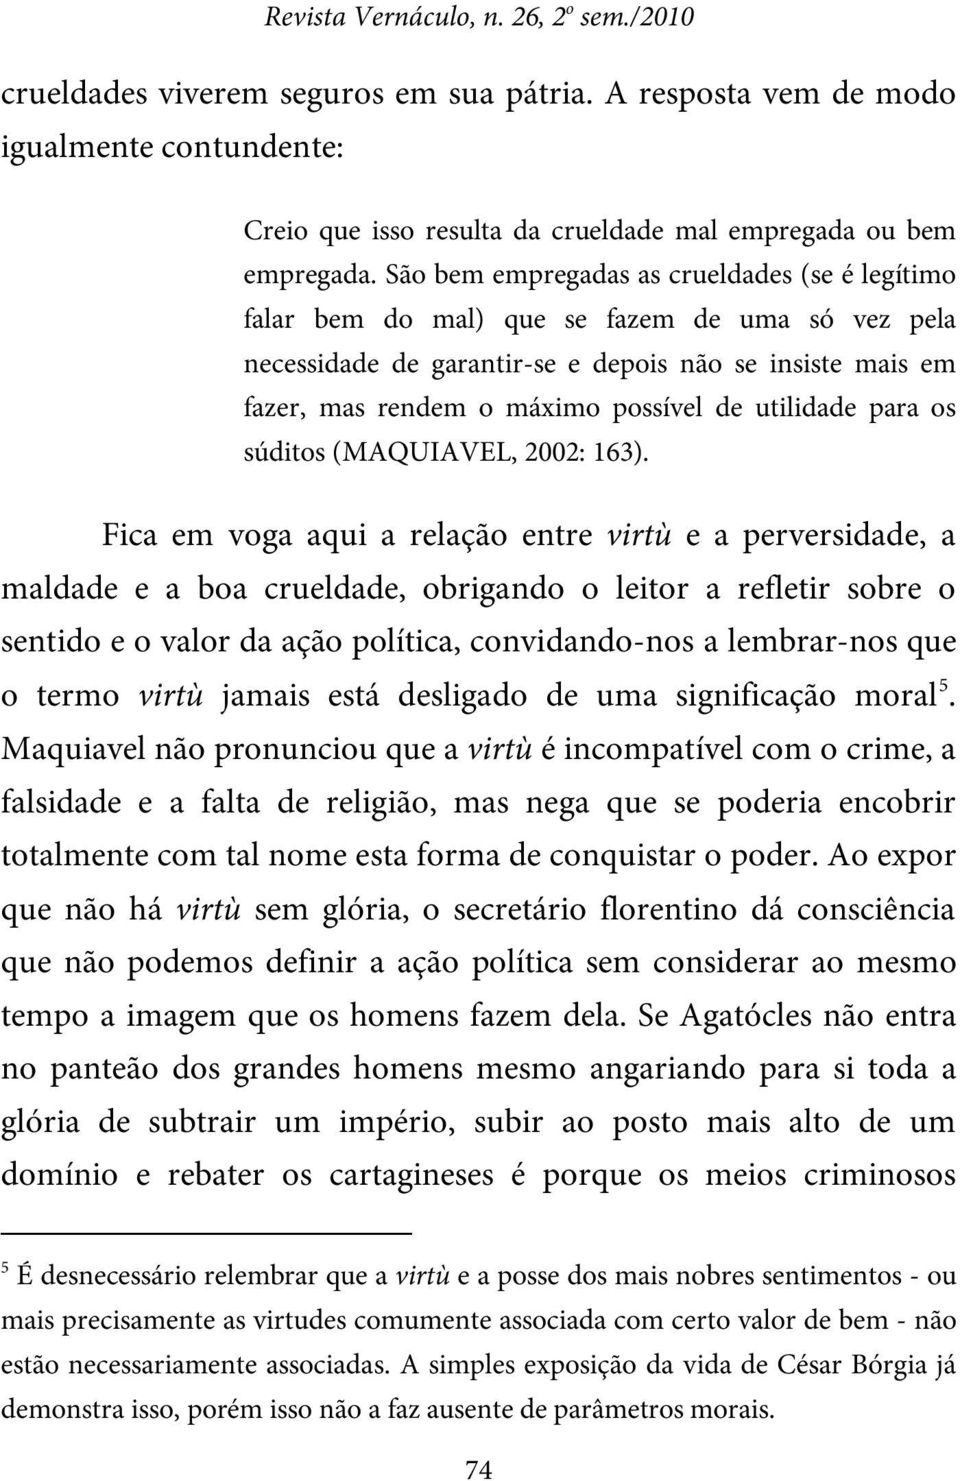 utilidade para os súditos (MAQUIAVEL, 2002: 163).